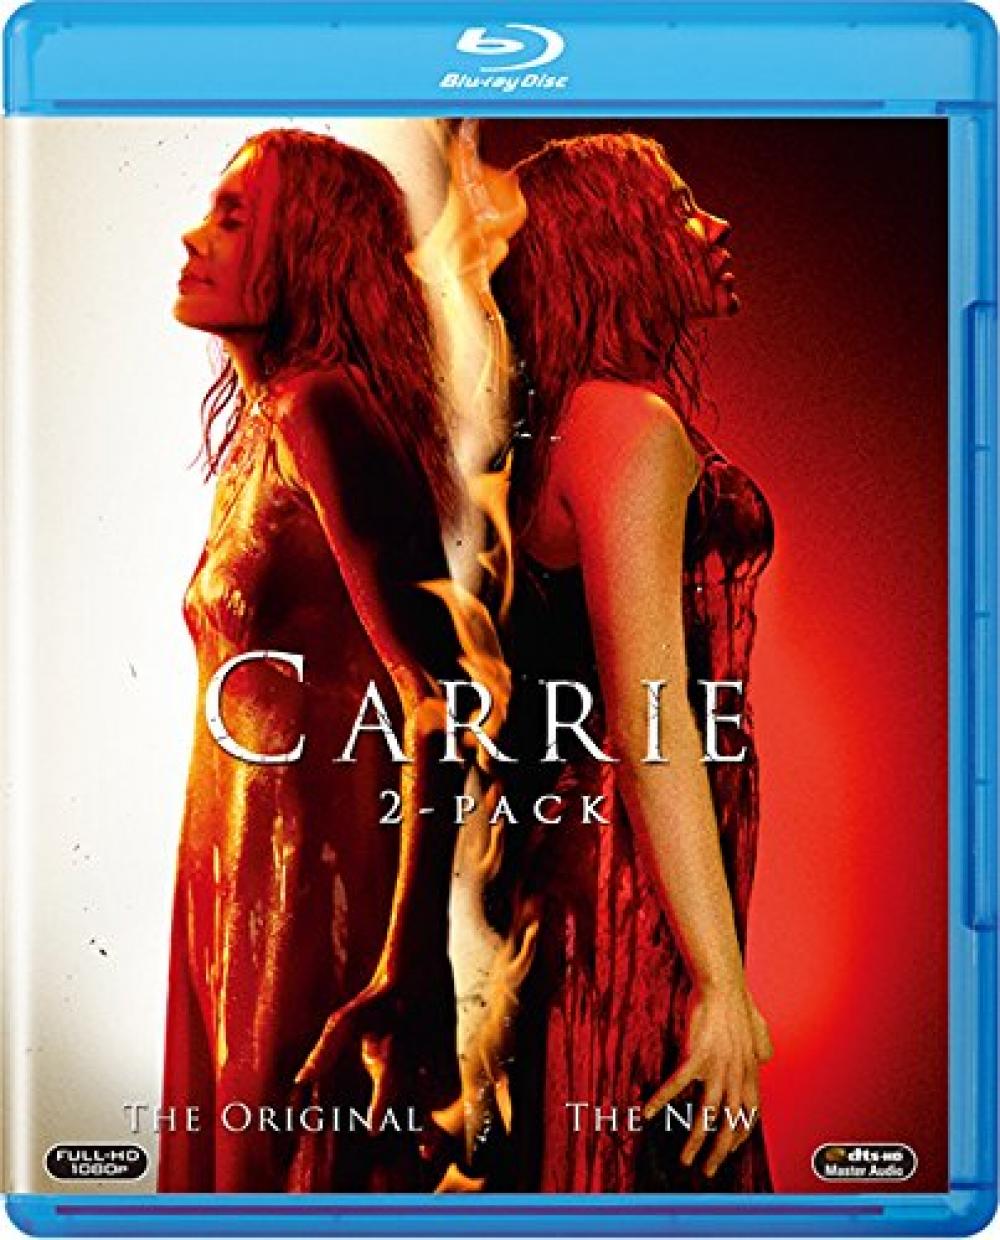 キャリー(2013)+キャリー(1976)ブルーレイパック(2枚組)〔初回生産限定〕 [Blu-ray]